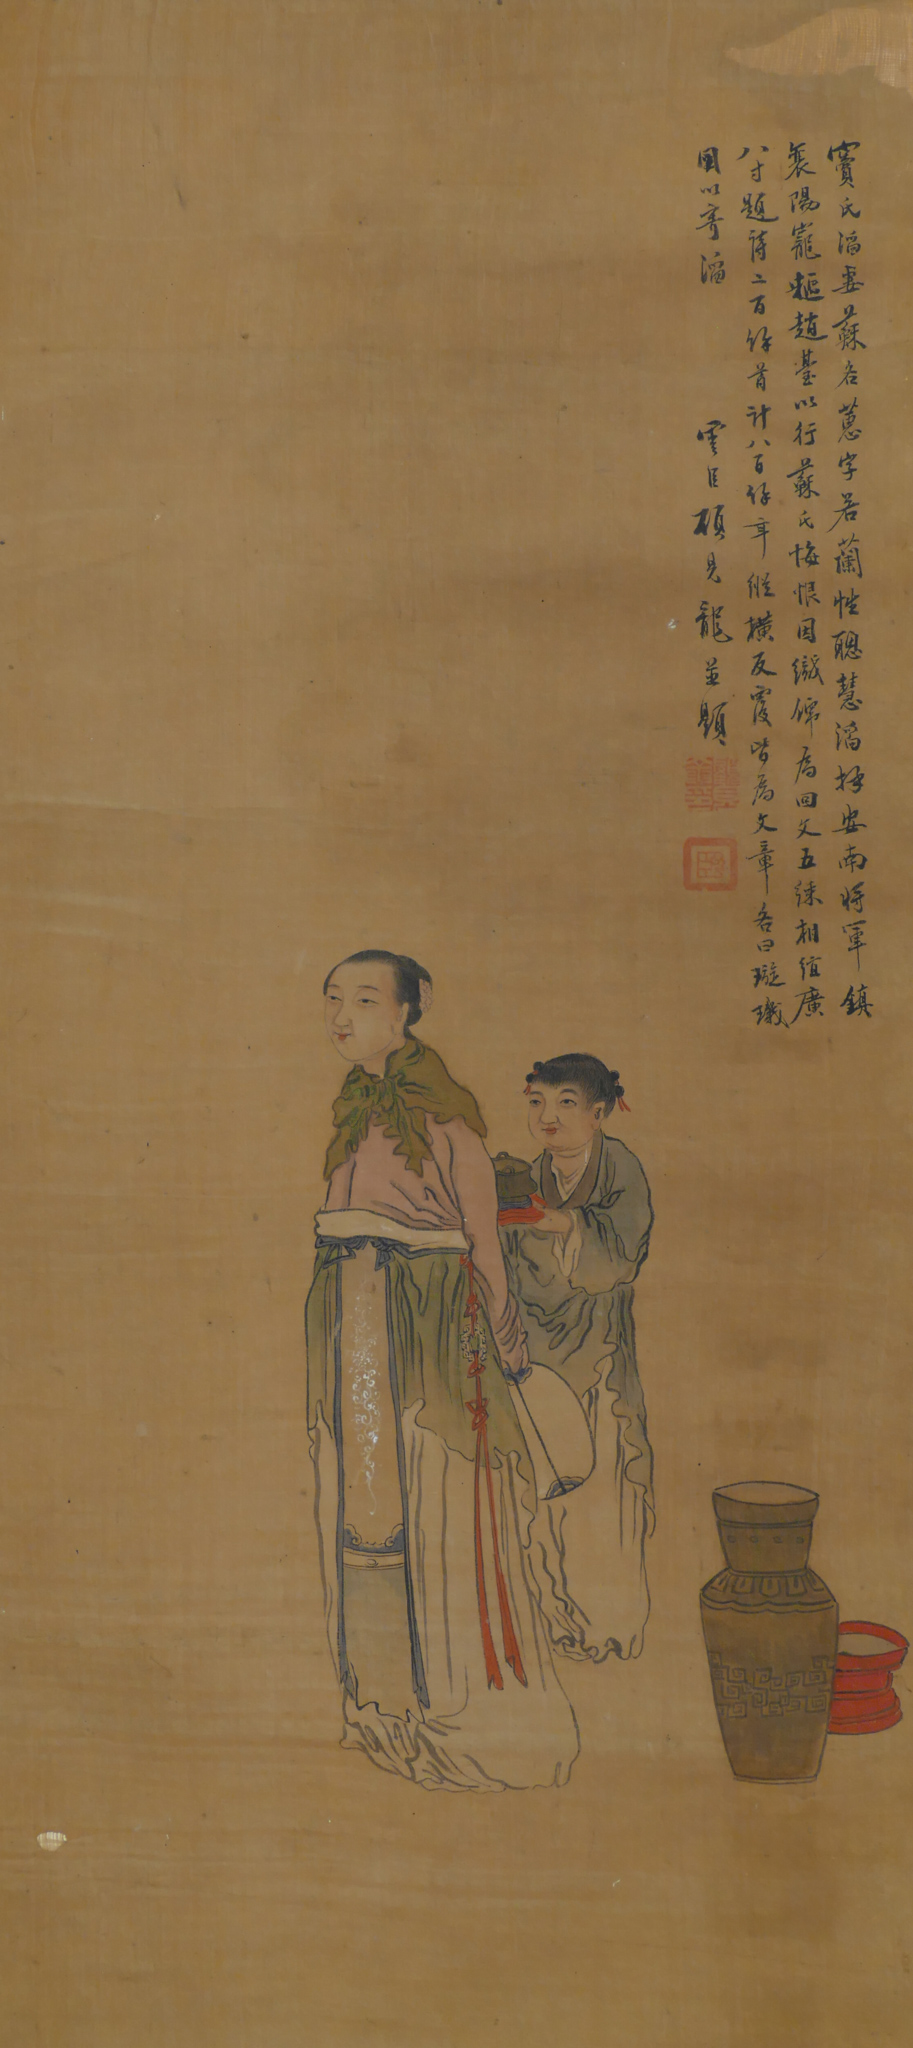 Attributed to Gu Jianlong (1606-1687